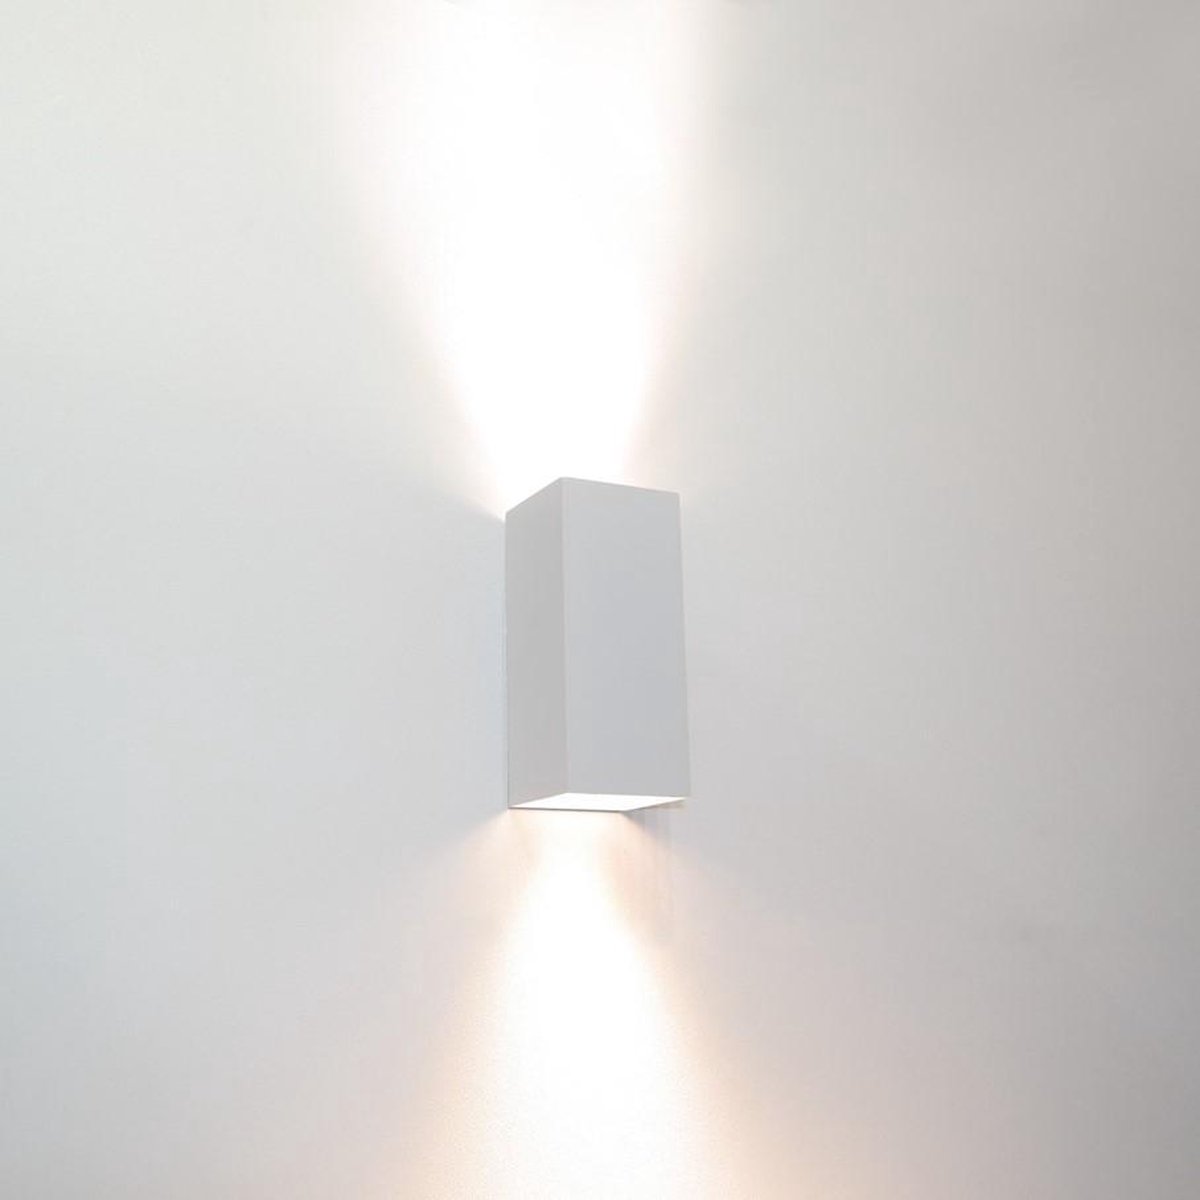 Wandlamp Dante 2 Wit - 6,6x6,6x15,4cm - 2x GU10 LED 4,8W 2700K 355lm - IP20 - Dimbaar > wandlamp wit | wandlamp binnen wit | wandlamp hal wit | wandlamp woonkamer wit | wandlamp slaapkamer wit | led lamp wit | sfeer lamp wit